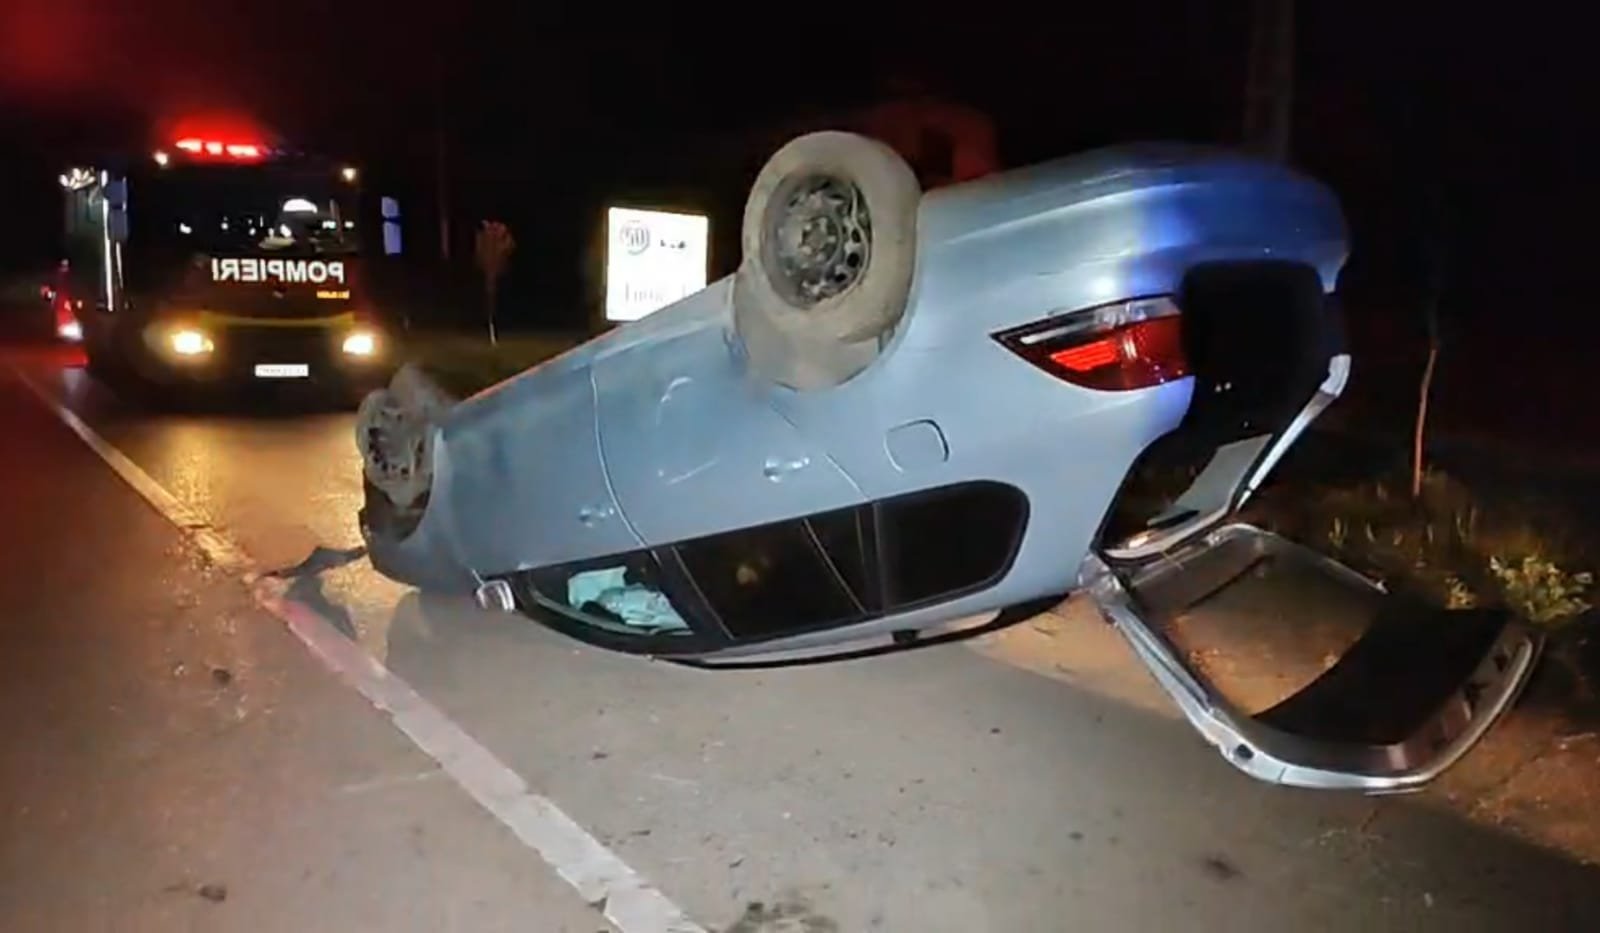  Accident, noaptea trecută în Chicerea. Un șofer începător s-a răsturnat cu mașina apoi a fugit FOTO